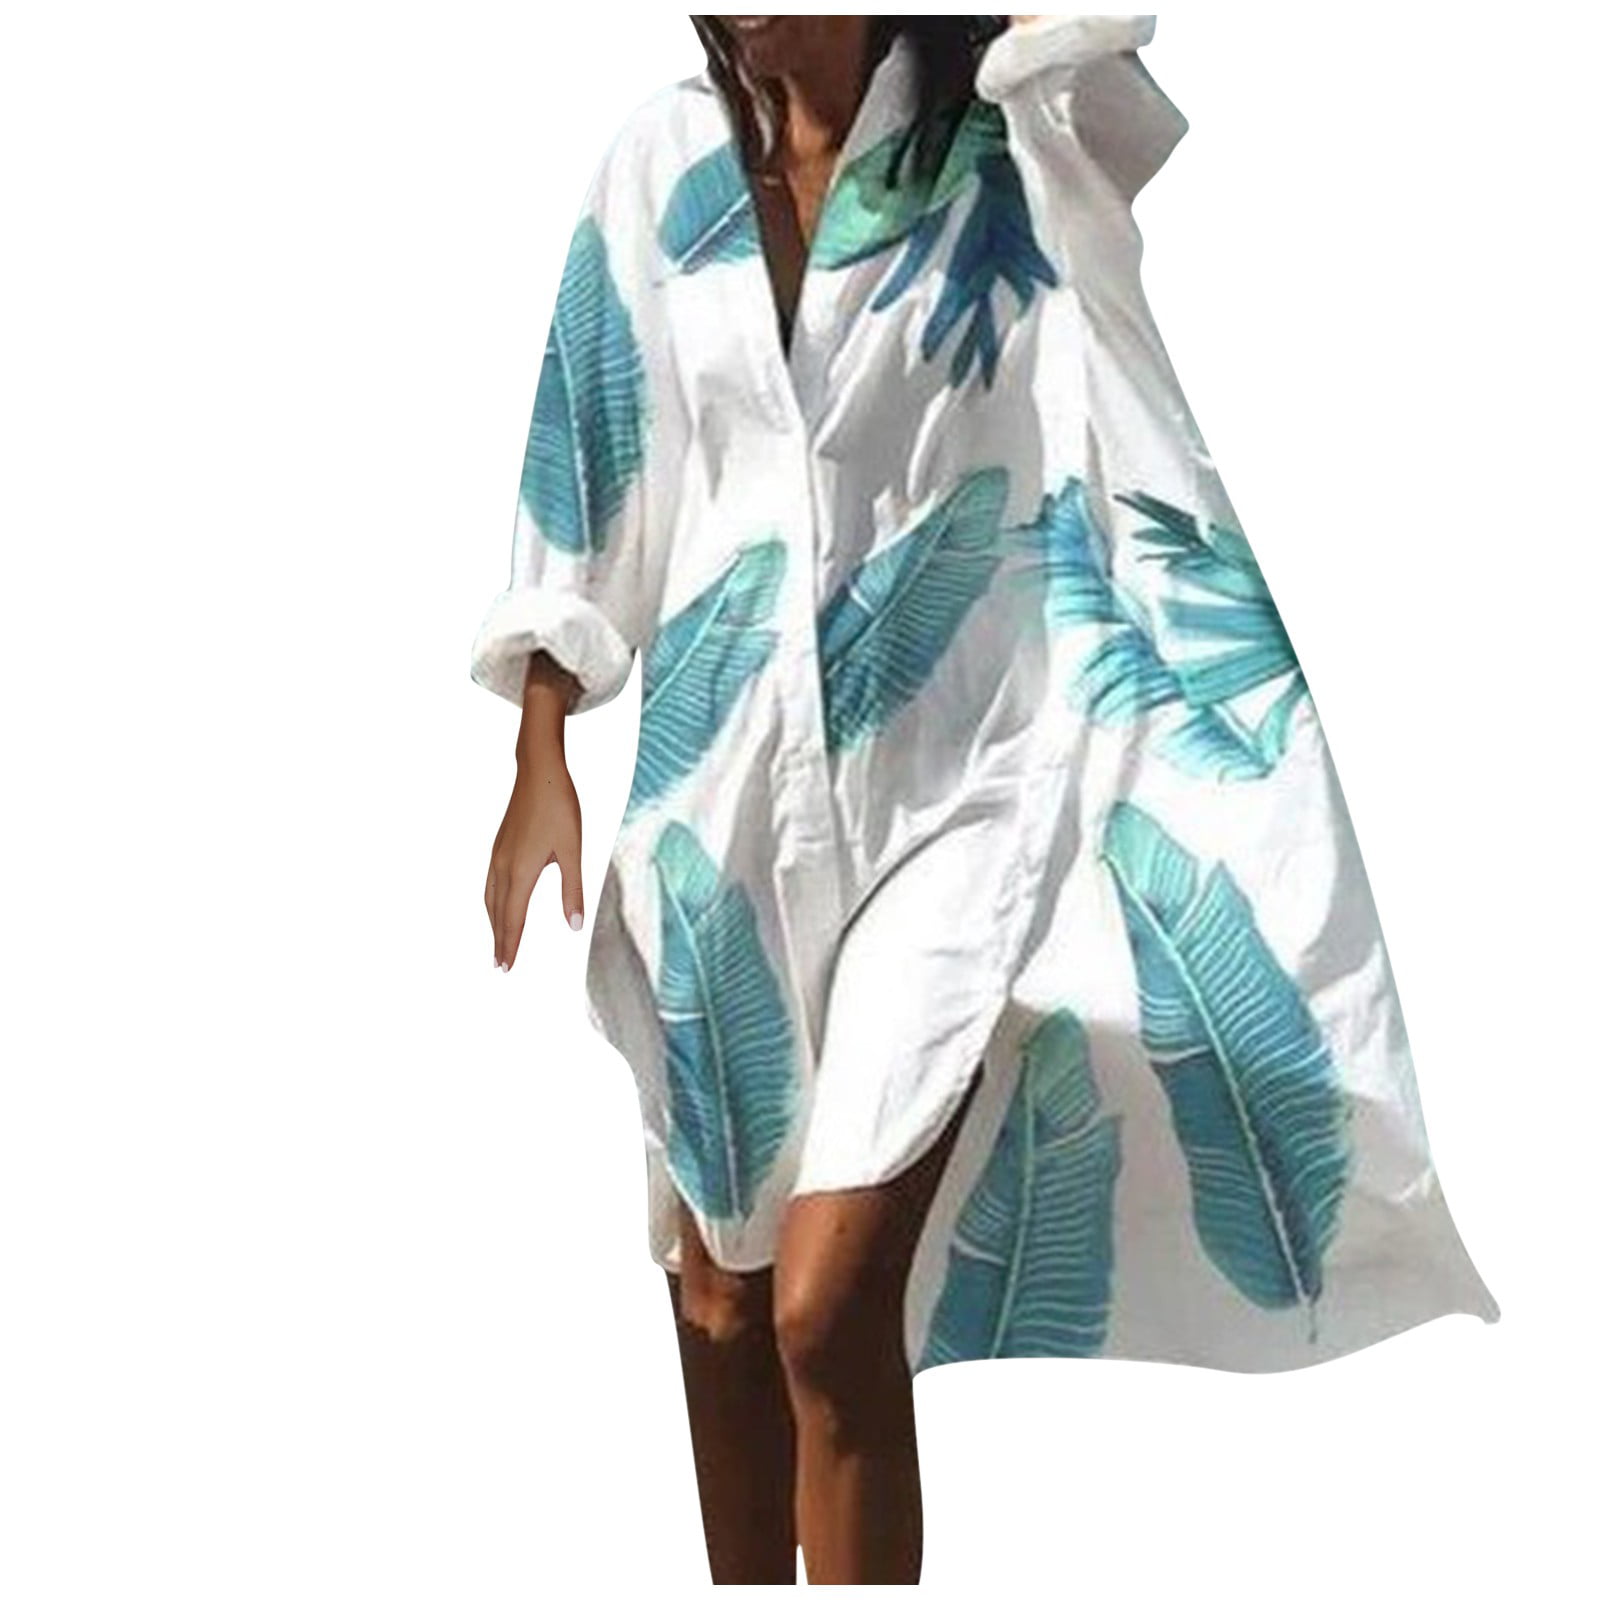 ELFINDEA Dress Women Summer Bohemian Dress Casual Print Shirt Dress For ...